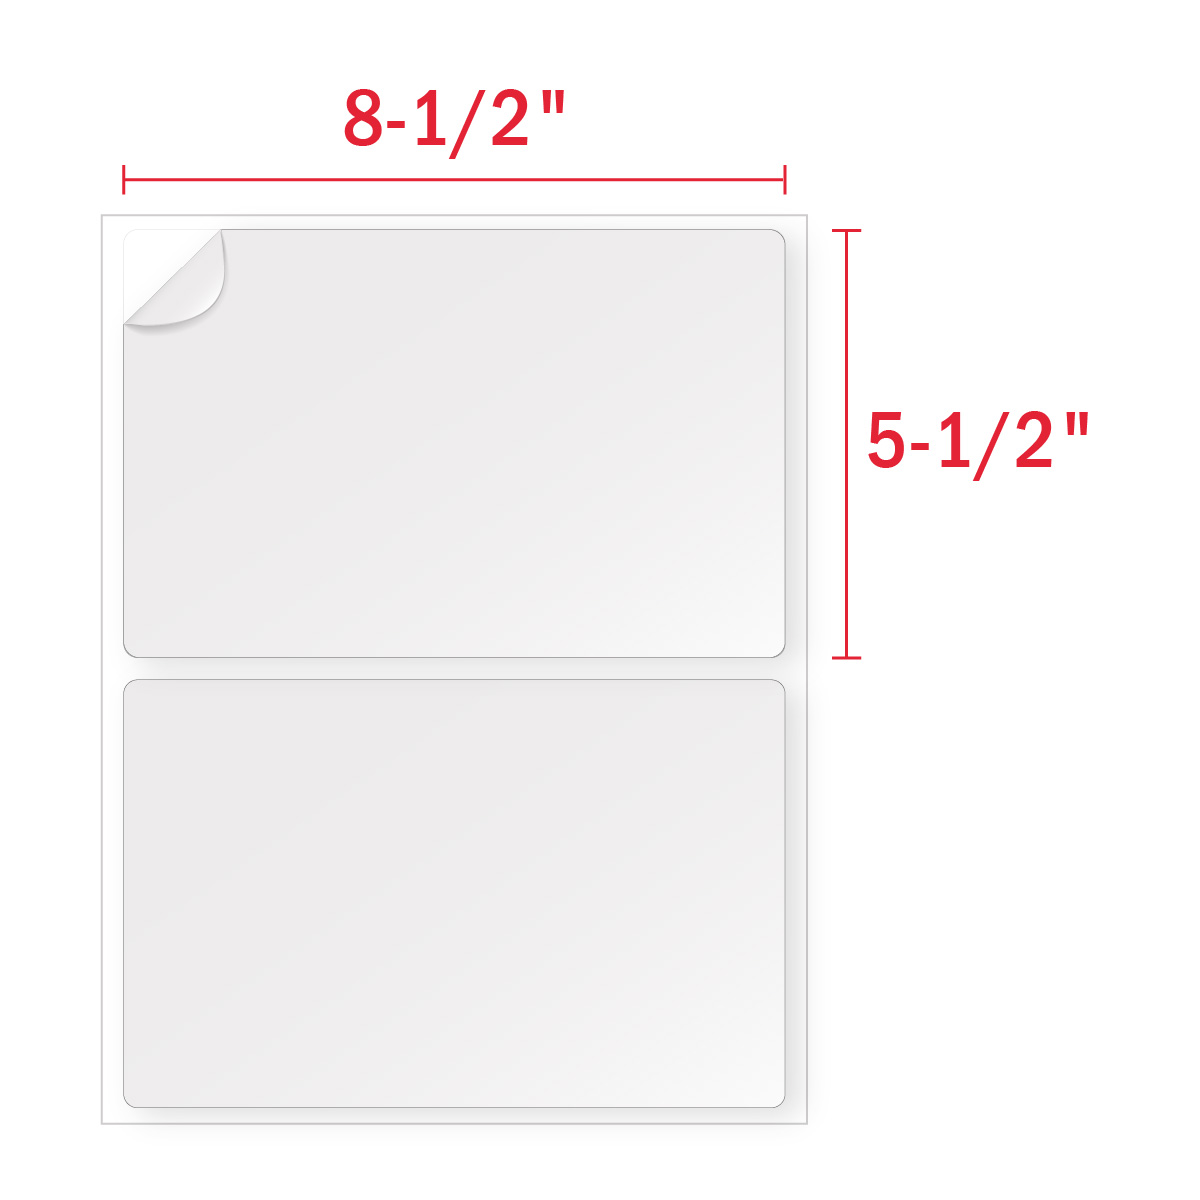 400 8.5 x 5.5 Wood Free Shipping Half-Sheet Self-Adhesive  PayPal Labels